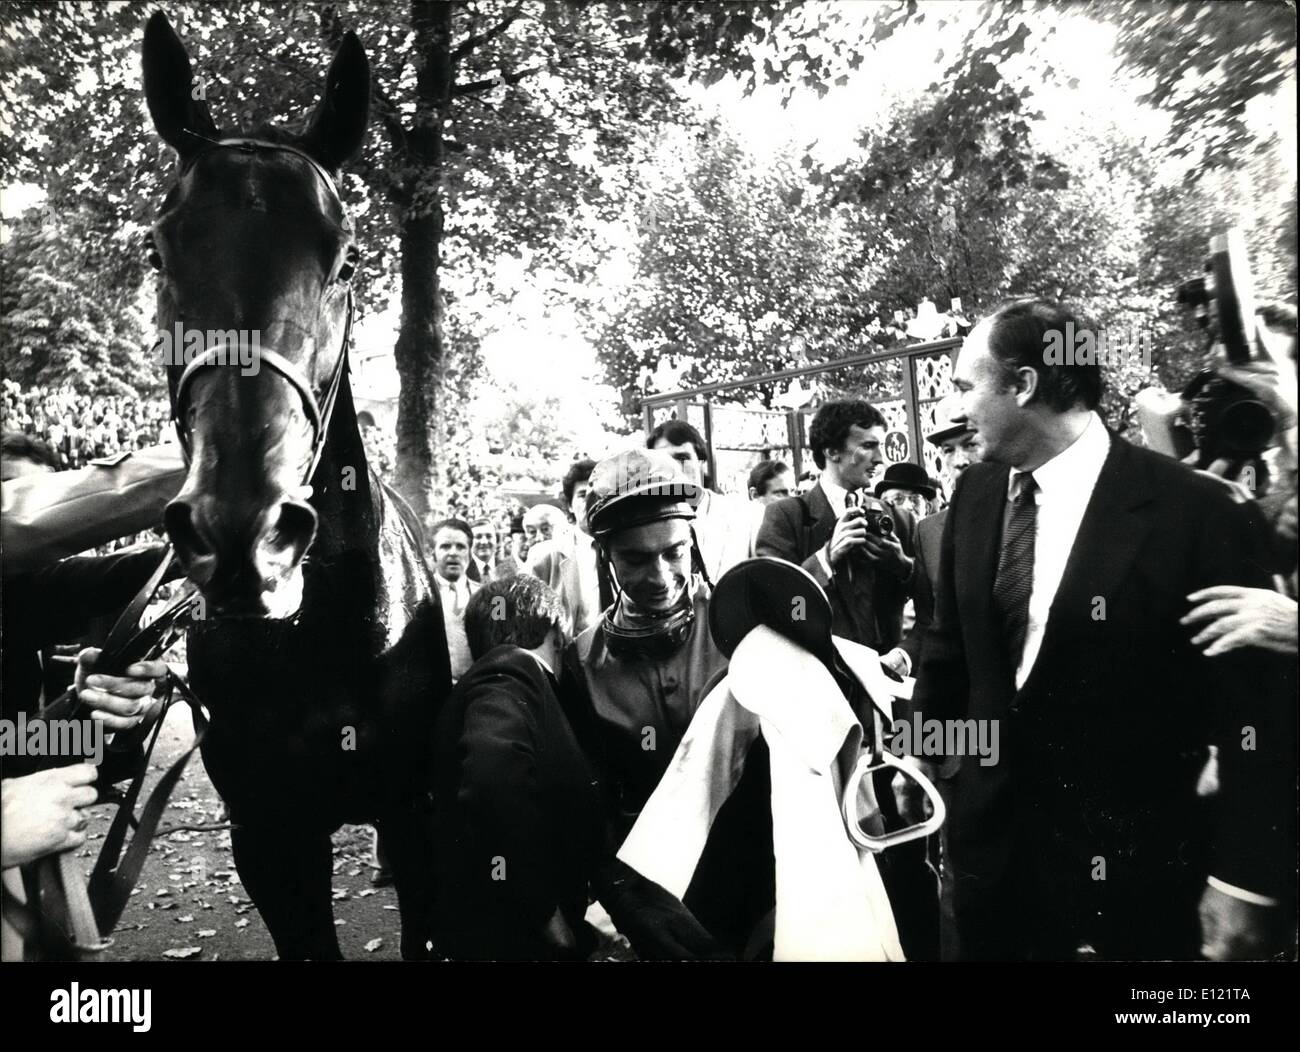 10 octobre 1982 - Akiyada et jockey Yves St Martin gagné l'Arc de Triomphe Prix du Longchamp les courses de chevaux. Le général Paul von Hase. Attentat du 20 juillet complot pour tuer Hitler. Banque D'Images